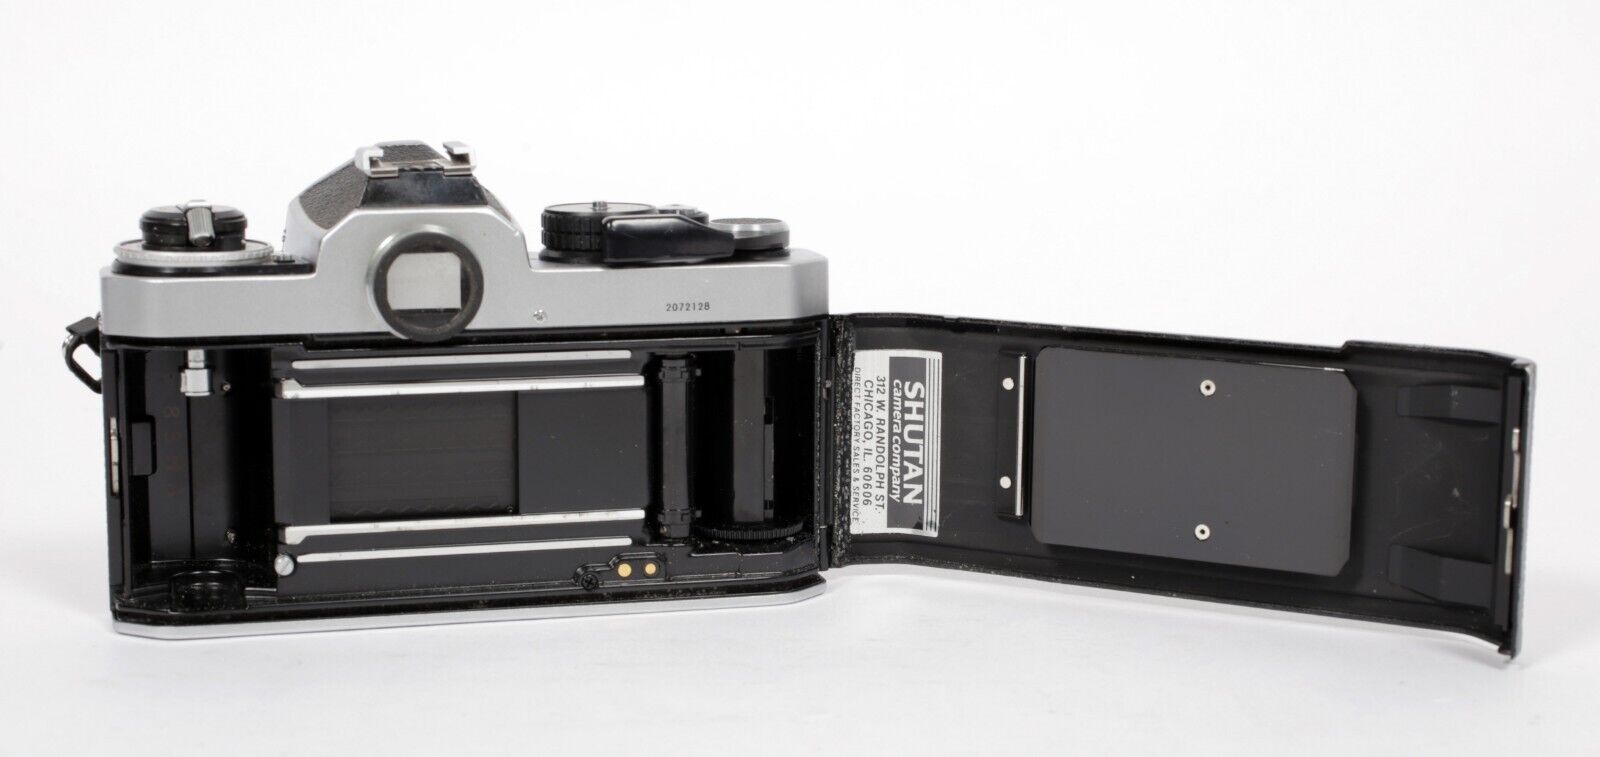 Nikon FE2 35mm SLR Film Camera with 50mm F1.8 Nikkor lens #128